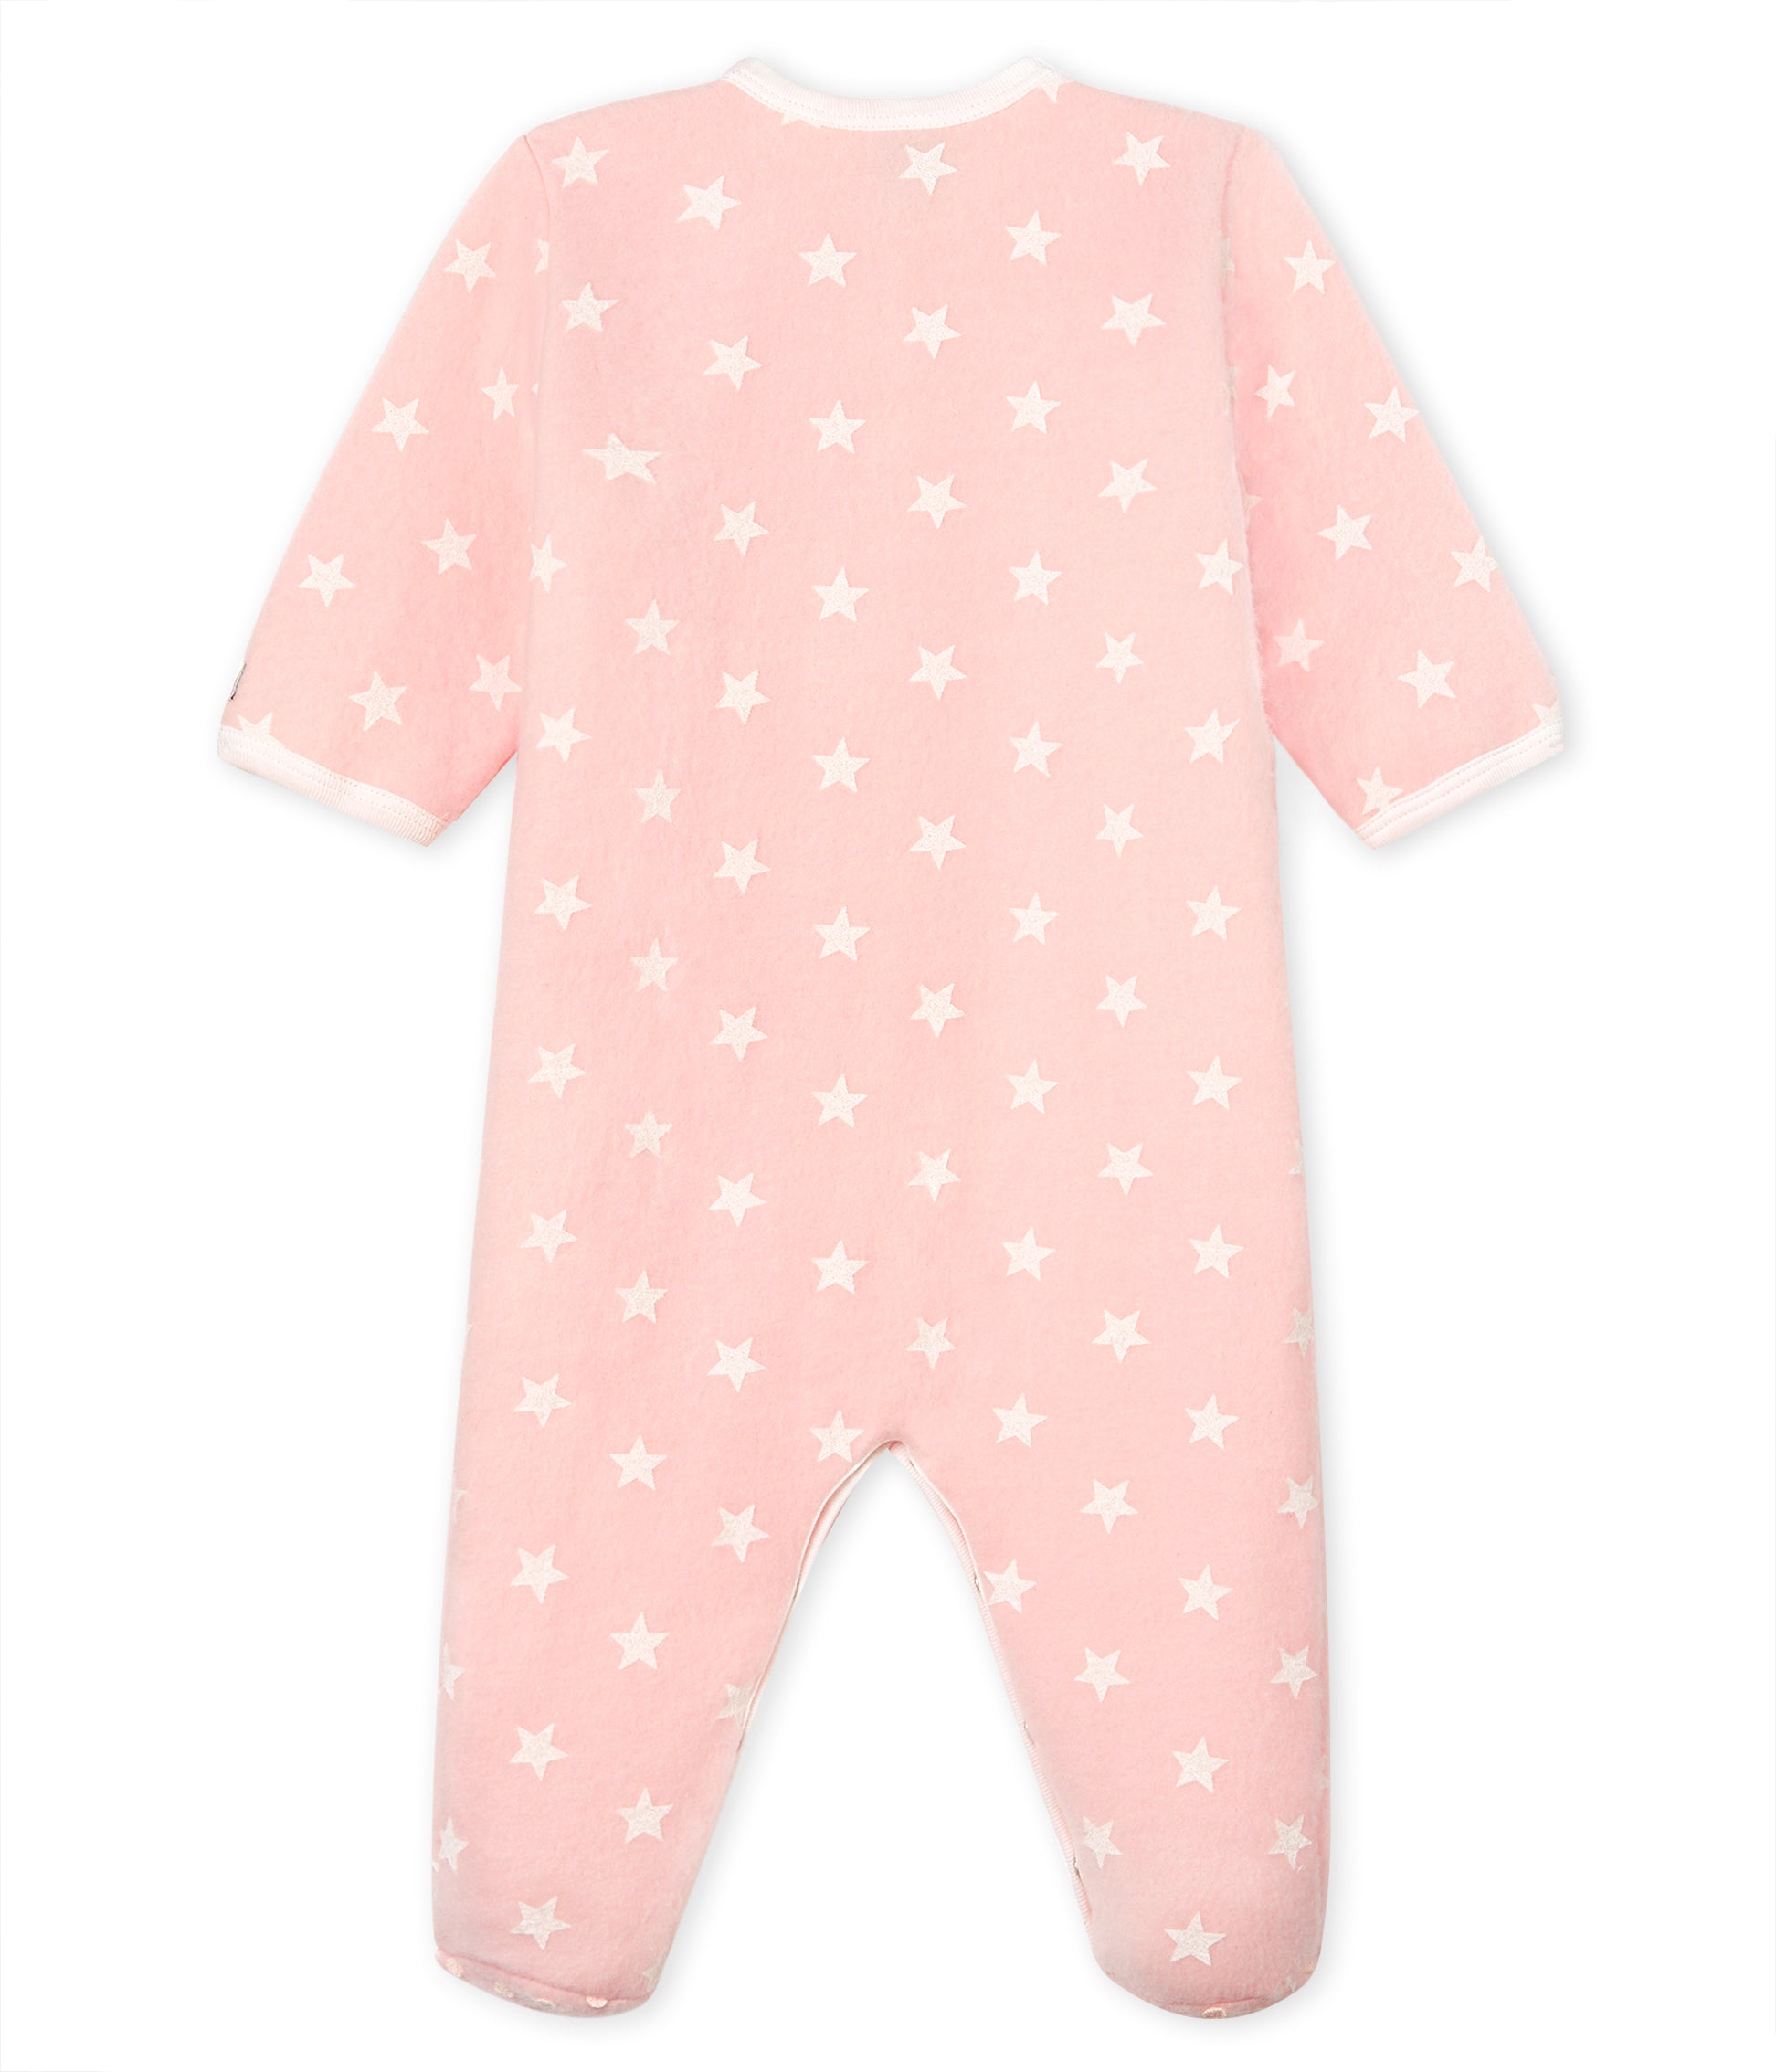 Baby Girls Pink Star Cotton Babysuit